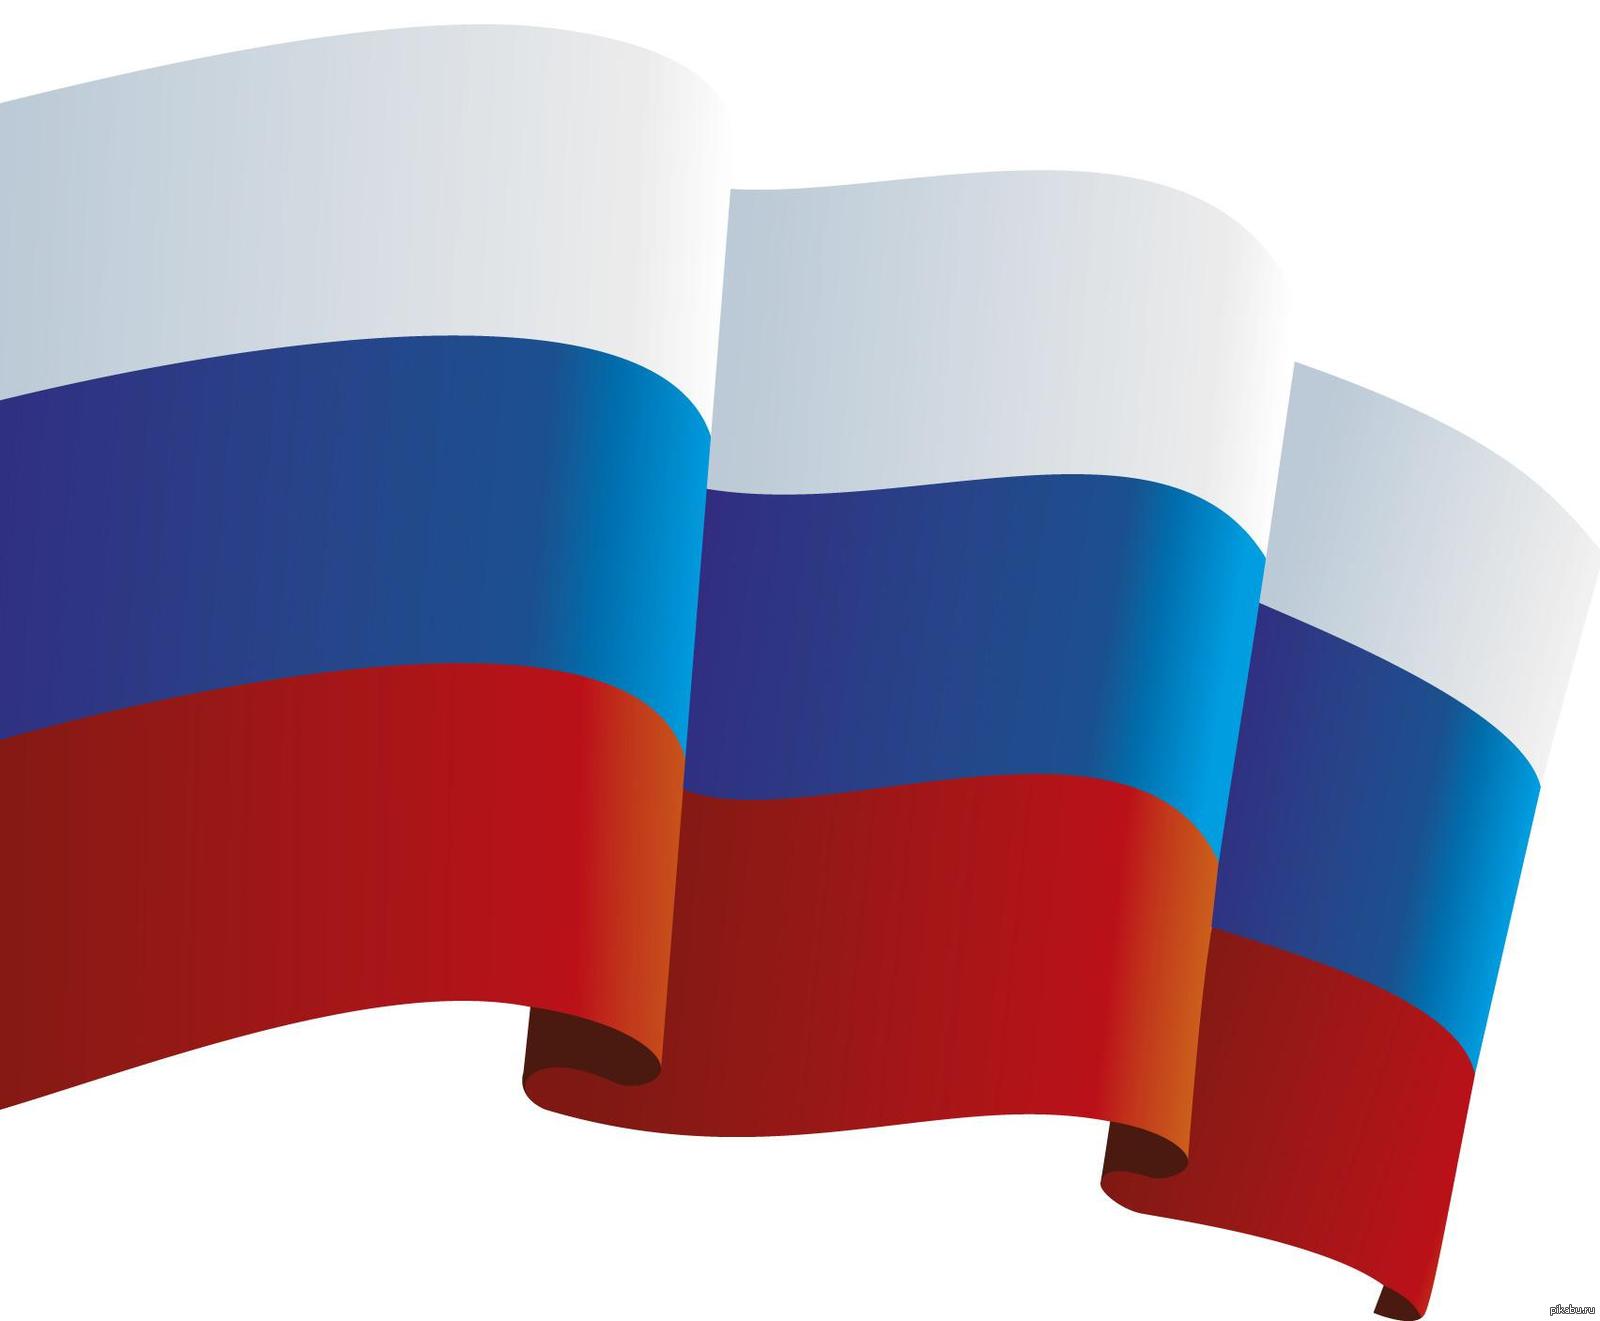 Флаг россии на черном фоне